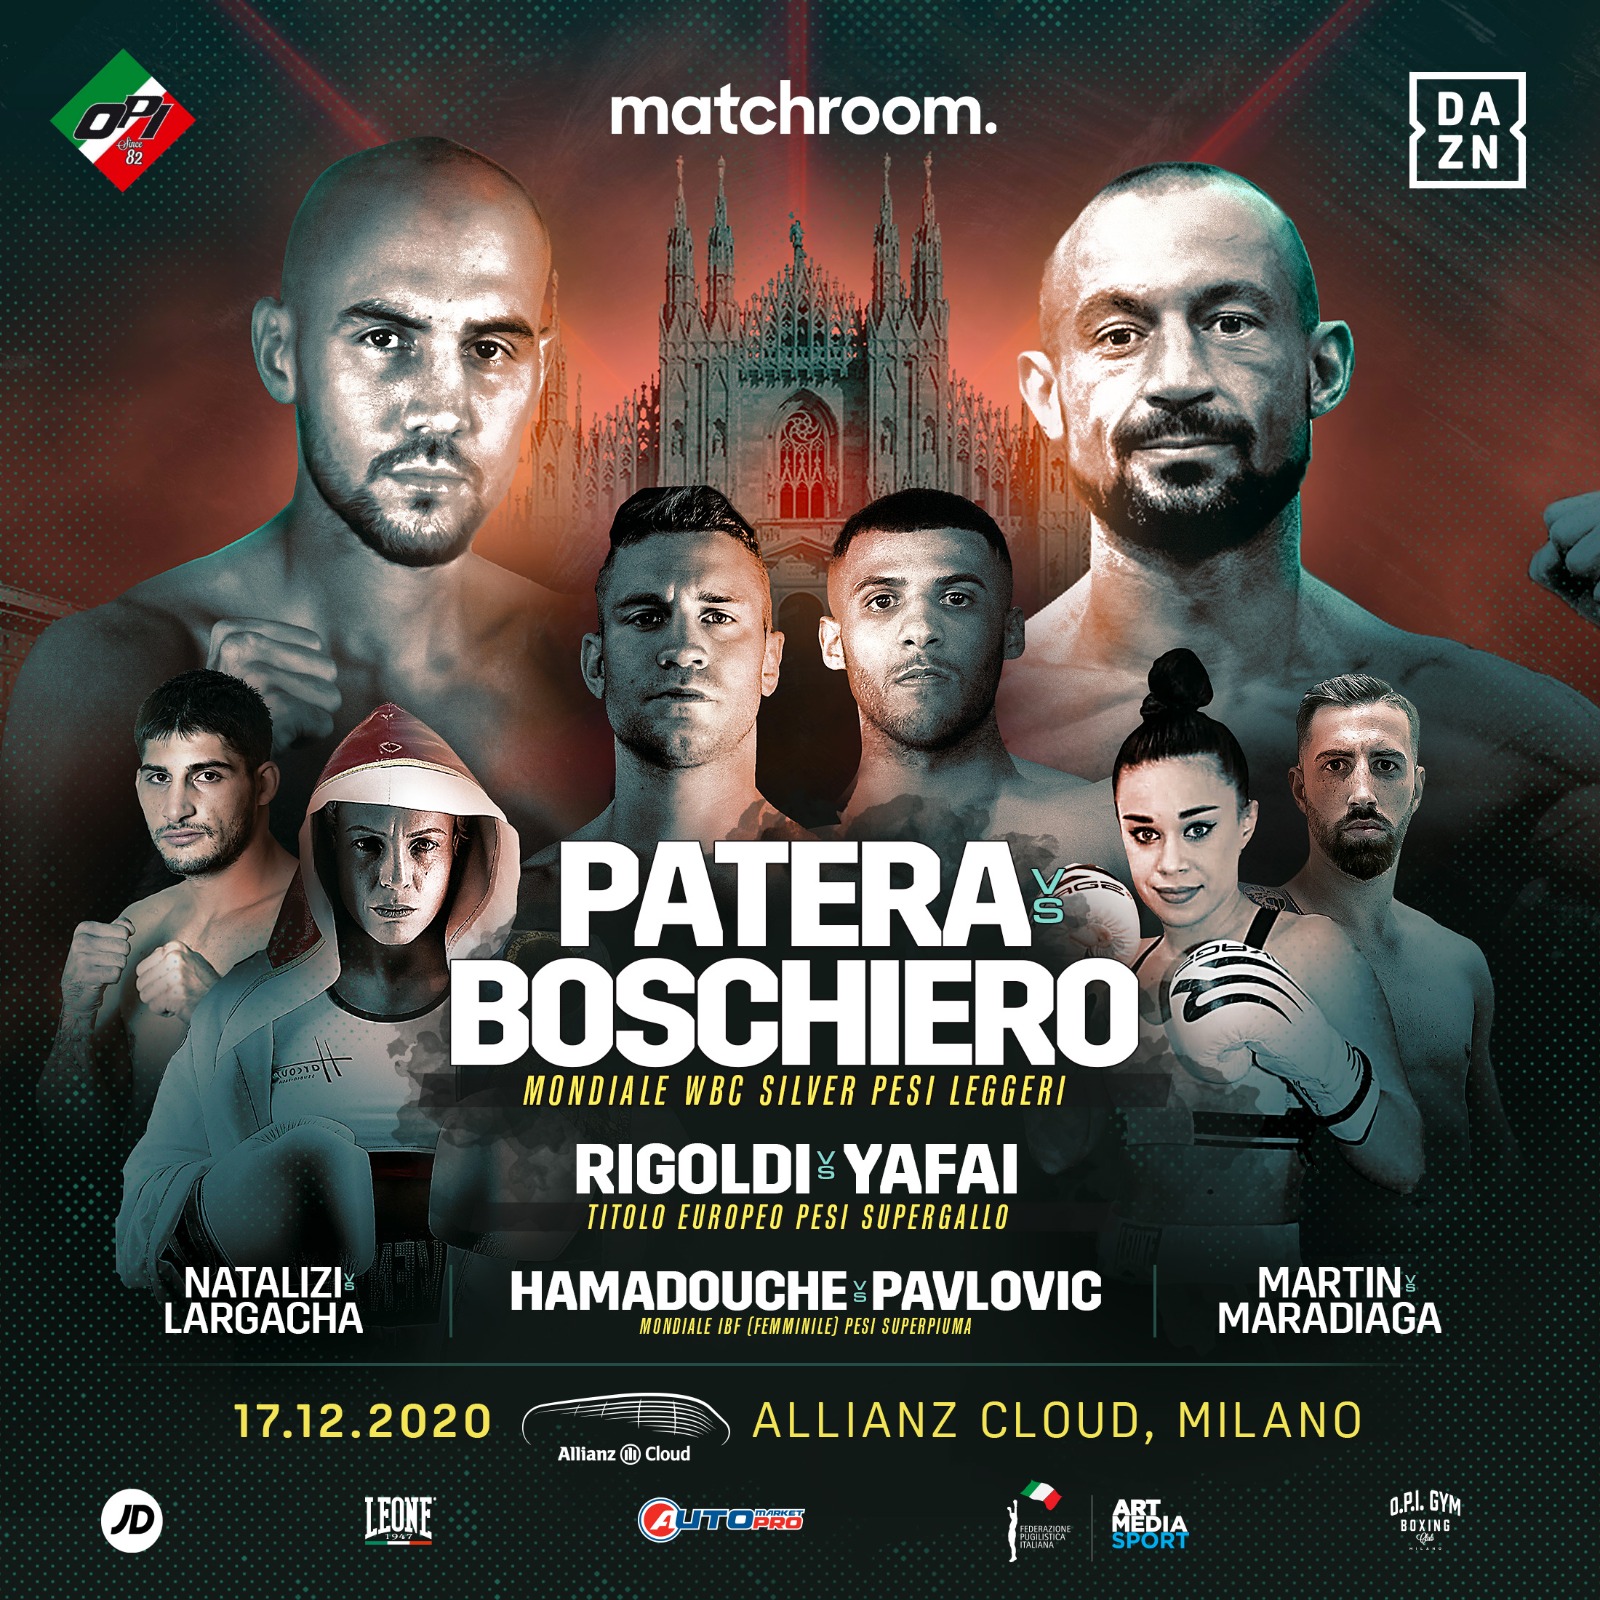 Milano Boxing Night - Annullato Match Boschiero vs Patera - Confermato Resto Programma 